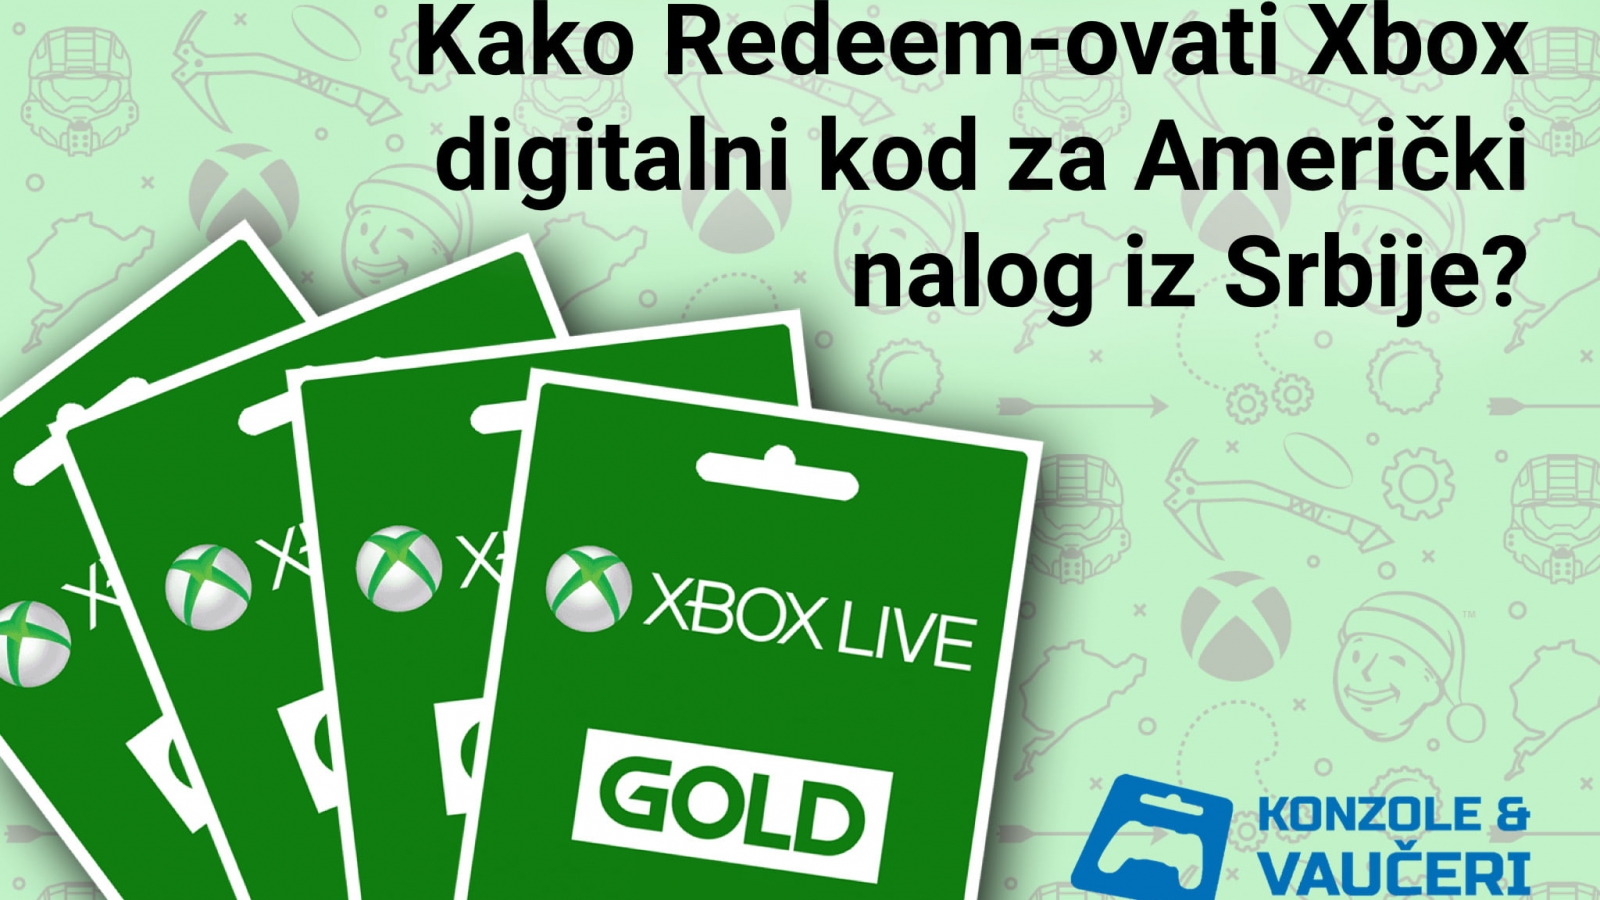 Kako uneti Xbox Game Pass Live Gold dopuna dolari kod u Američki xbox nalog iz Srbije konzole i vaučeri